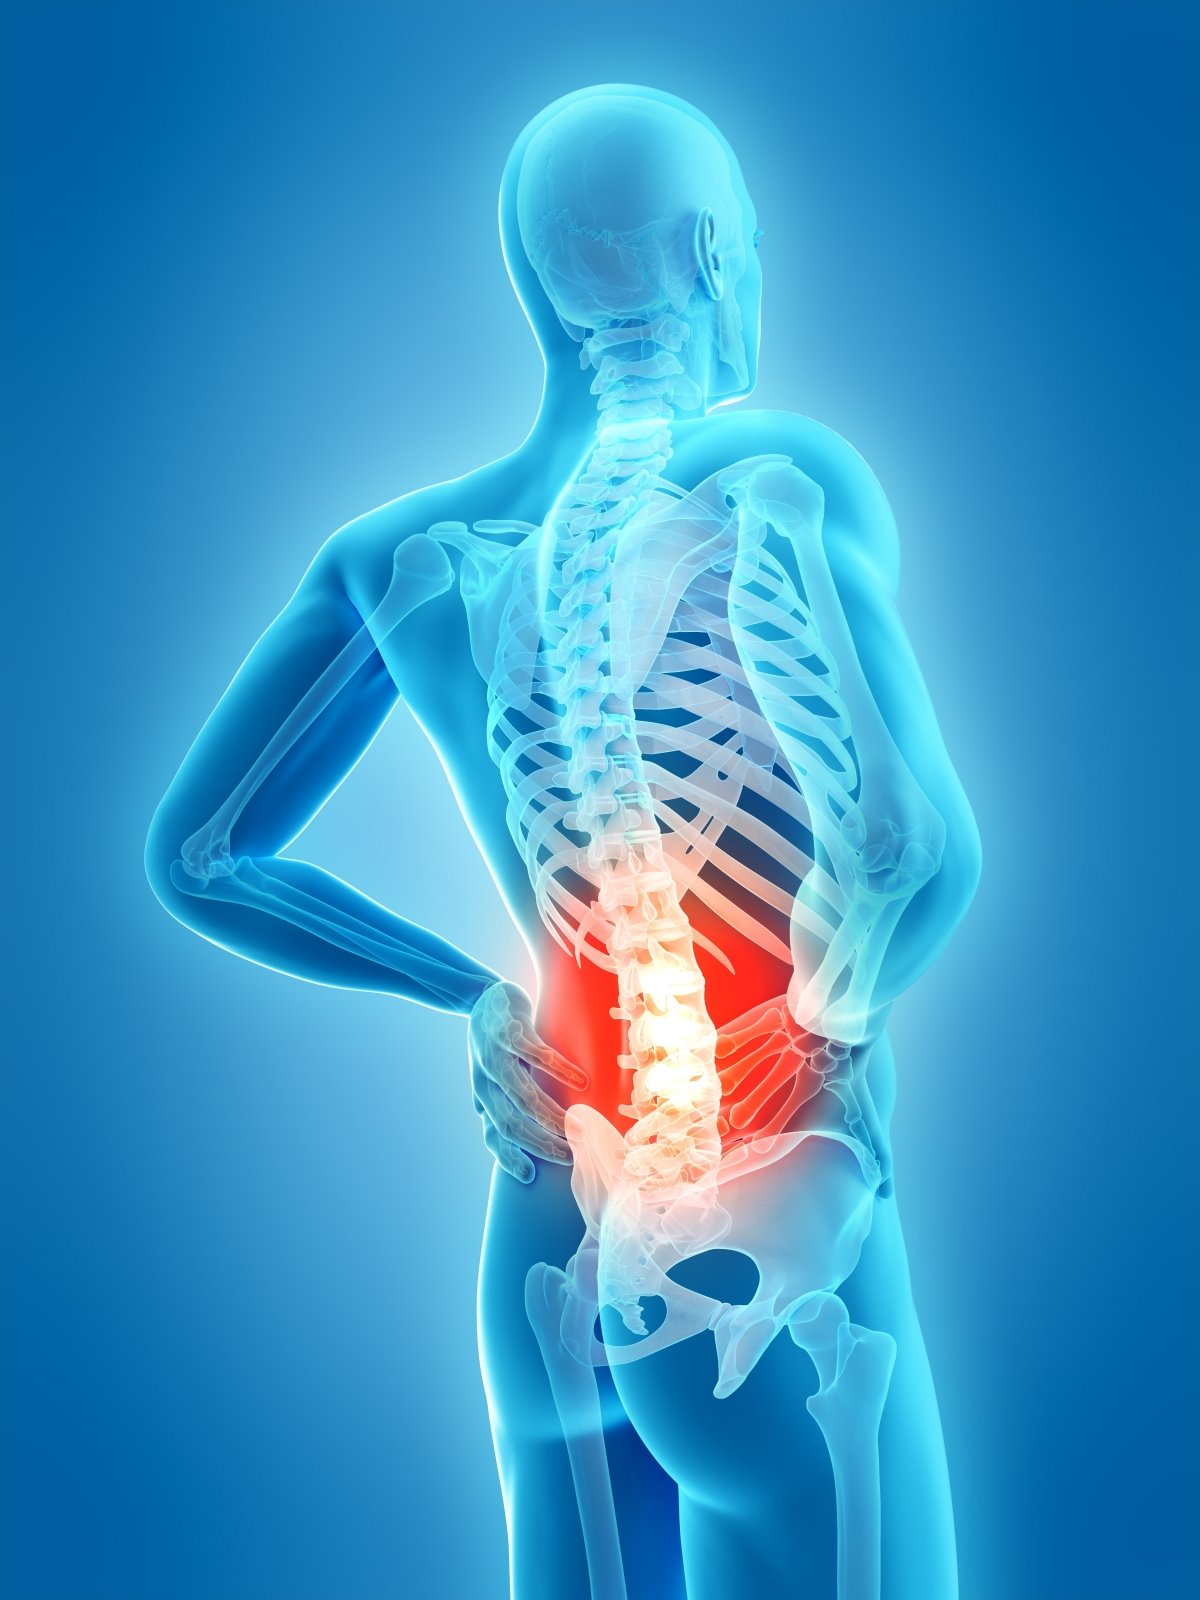 gydymas skausmas nugaros skausmas reumatinės sąnarių skausmas gydymas